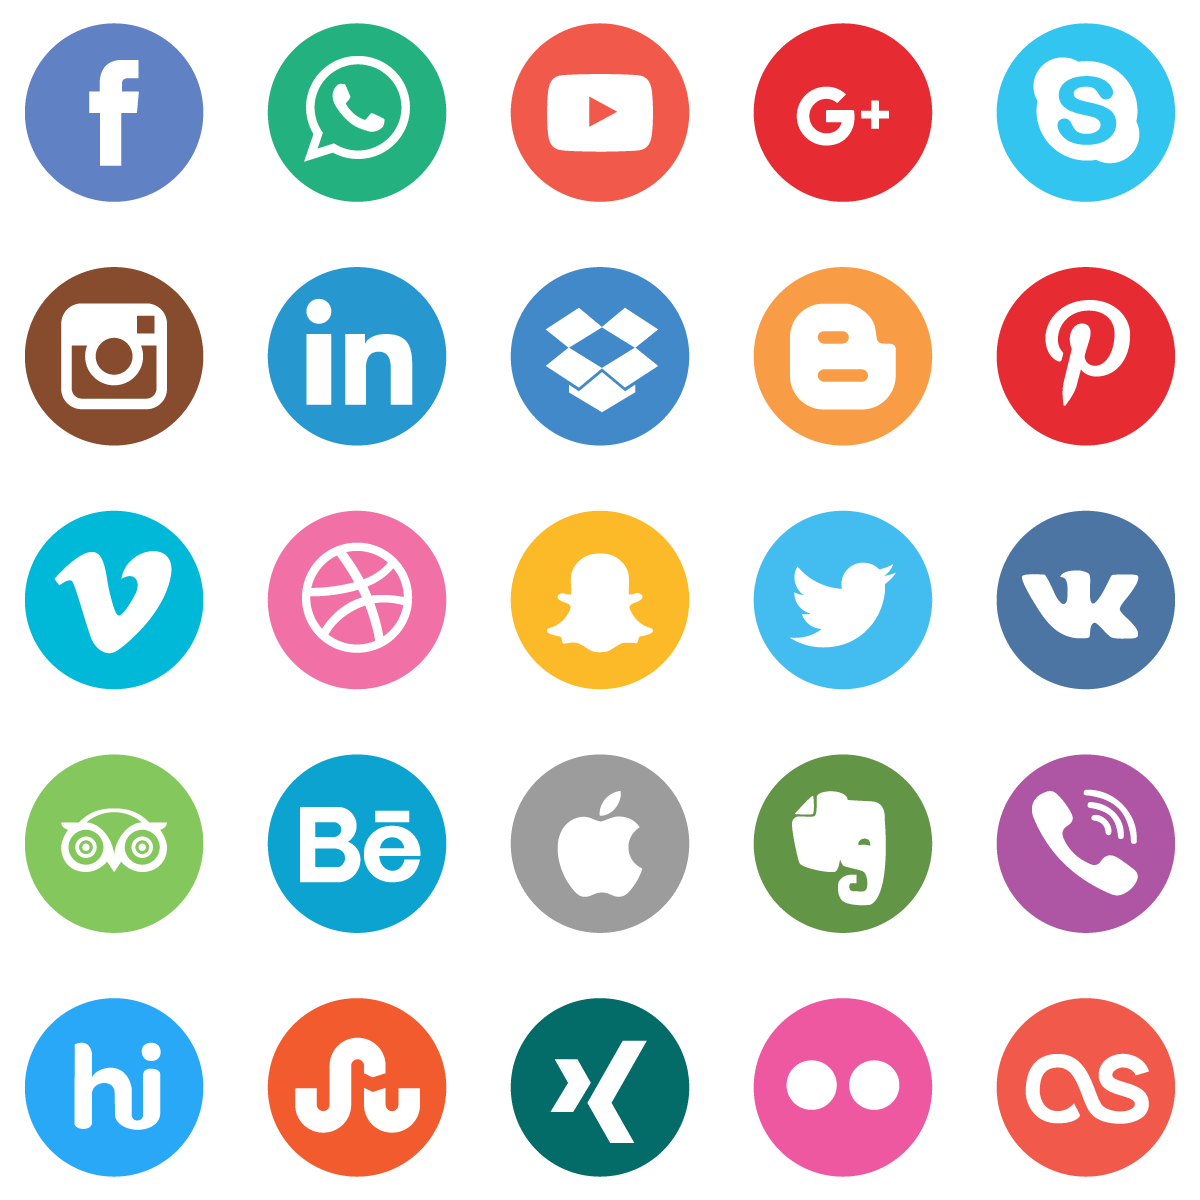 Соц сетей png. Значки социальных сетей. Соцсети иконки. Соцсети логотипы. Иконки социальных сетей и мессенджеров.